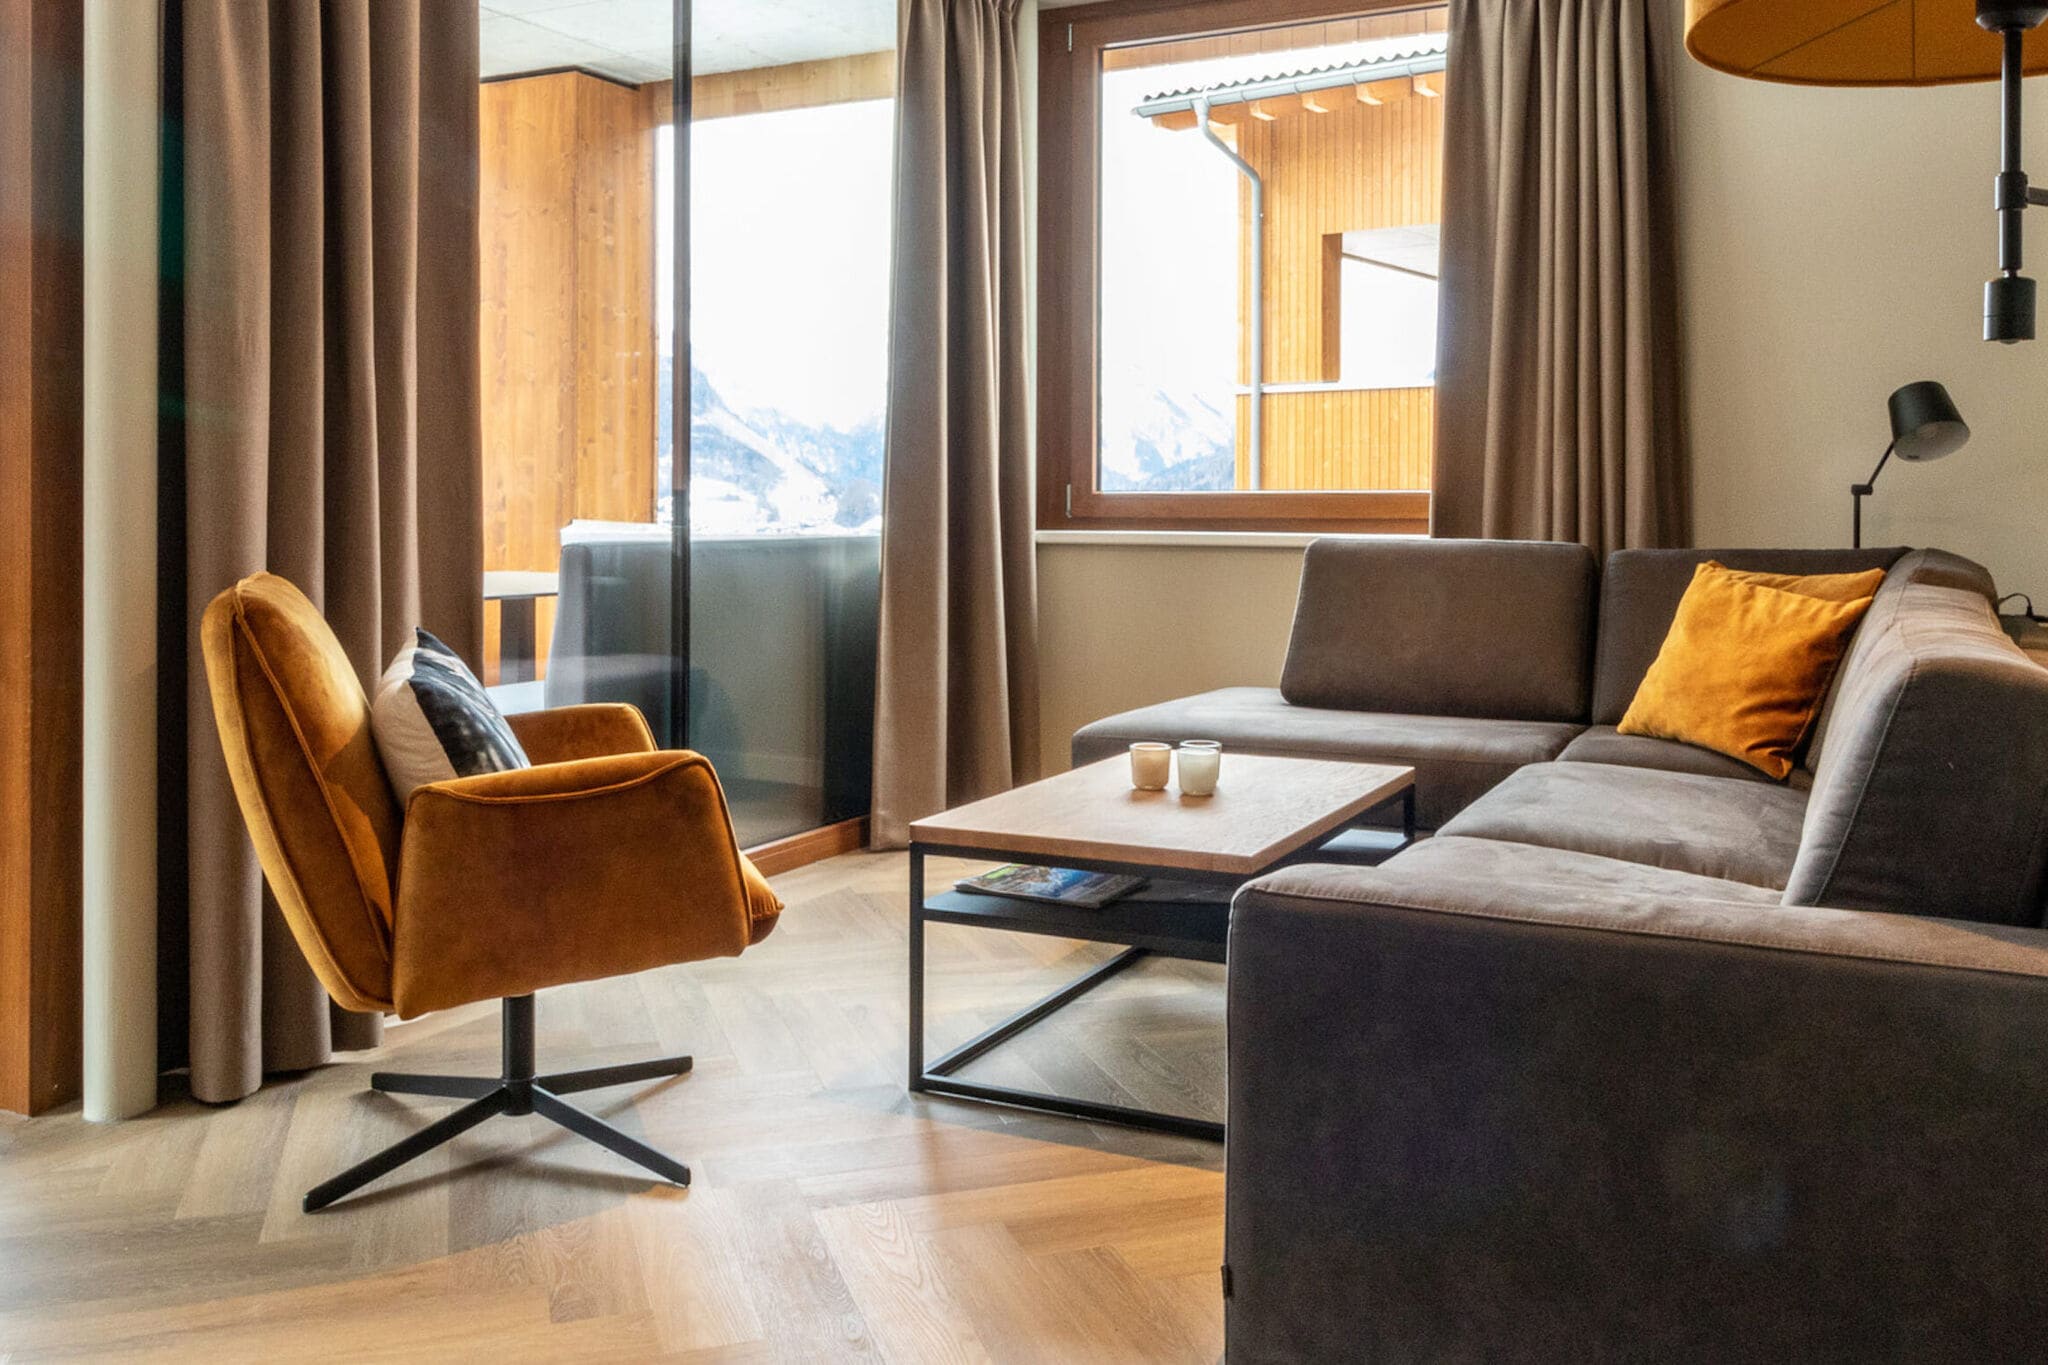 Stylish apartment with sauna, ski area at 600 m